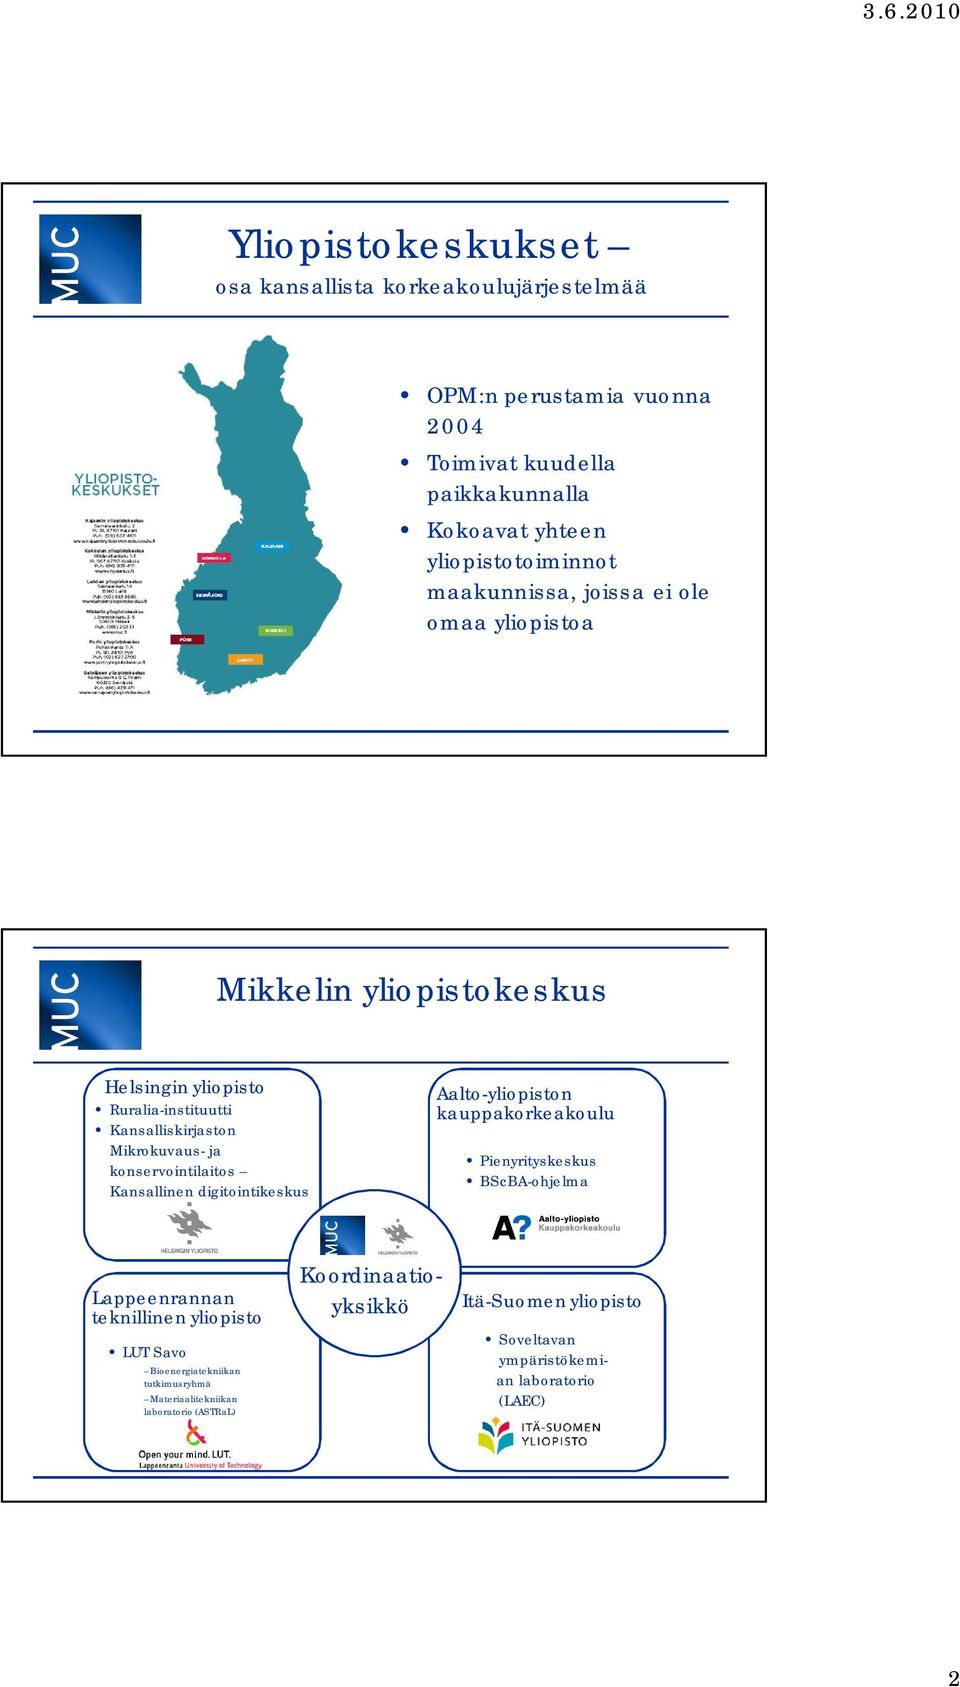 konservointilaitos Kansallinen digitointikeskus Aalto-yliopiston kauppakorkeakoulu Pienyrityskeskus BScBA-ohjelma Lappeenrannan teknillinen